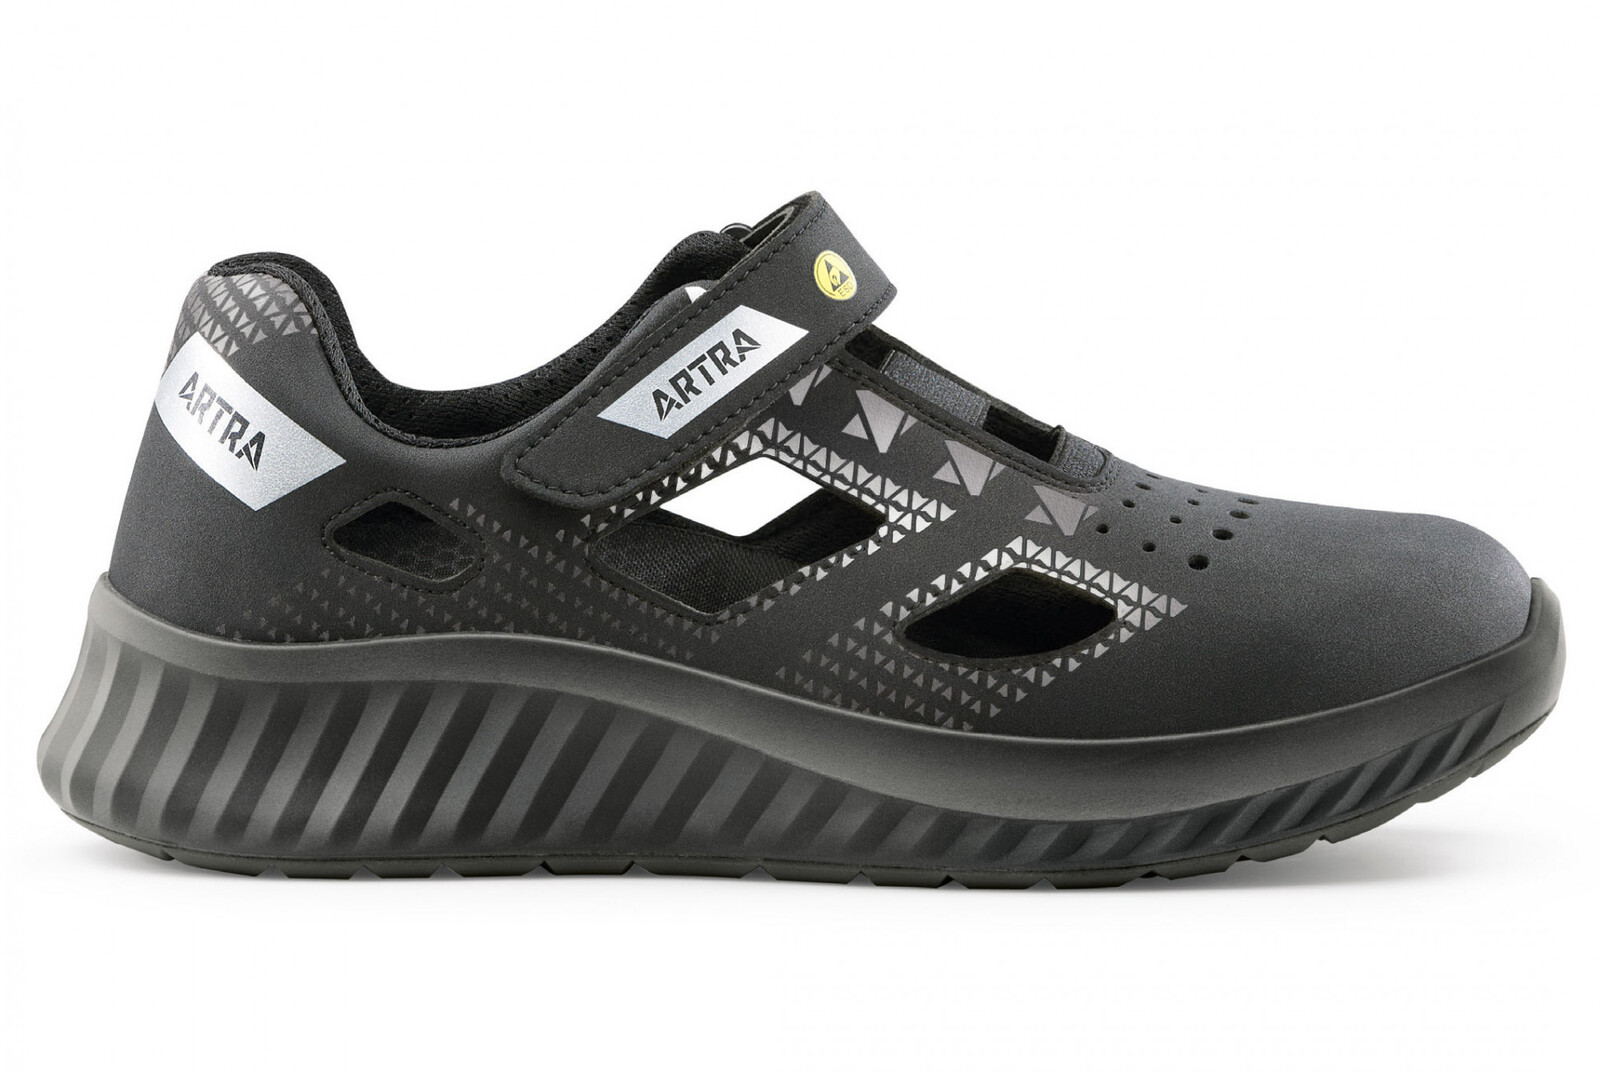 Bezpečnostné sandále Artra Arso 701 616560 S1P SRC ESD - veľkosť: 42, farba: čierna/sivá